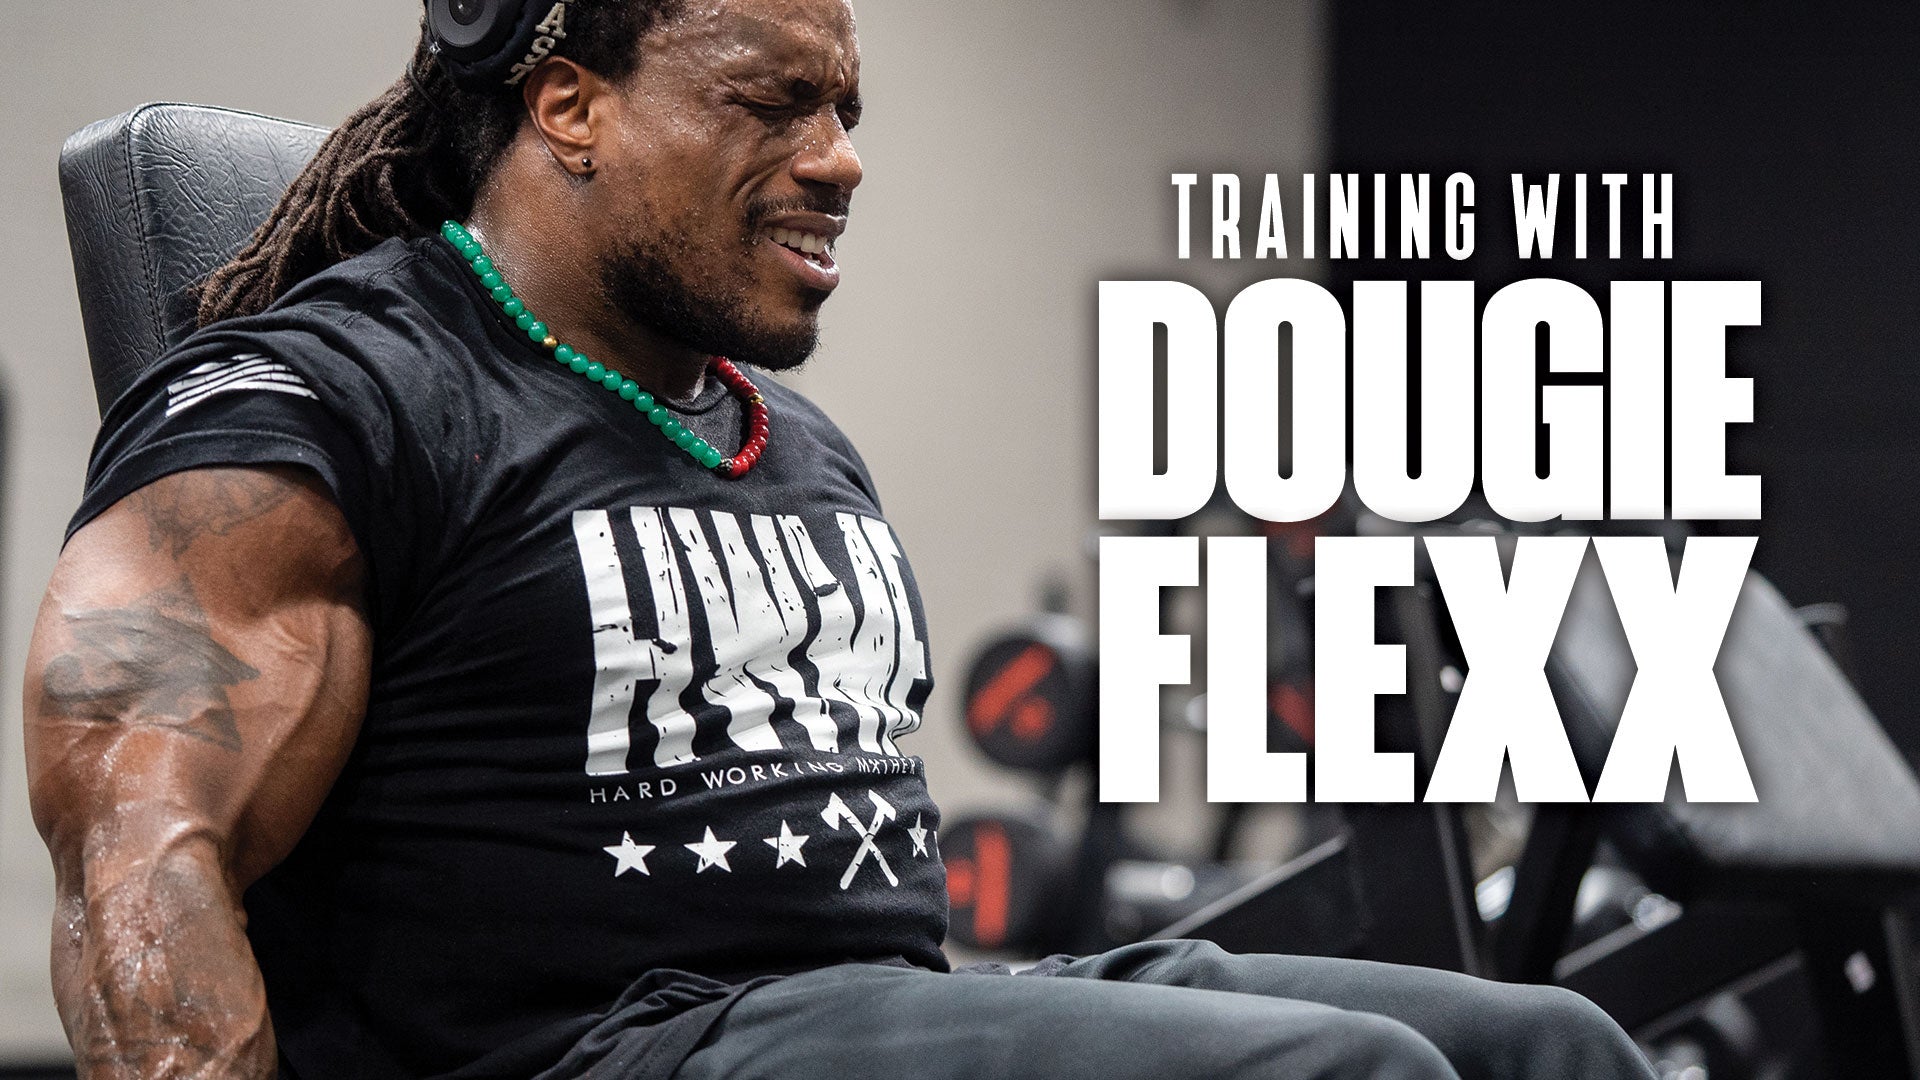 Training with Dougie Flexx